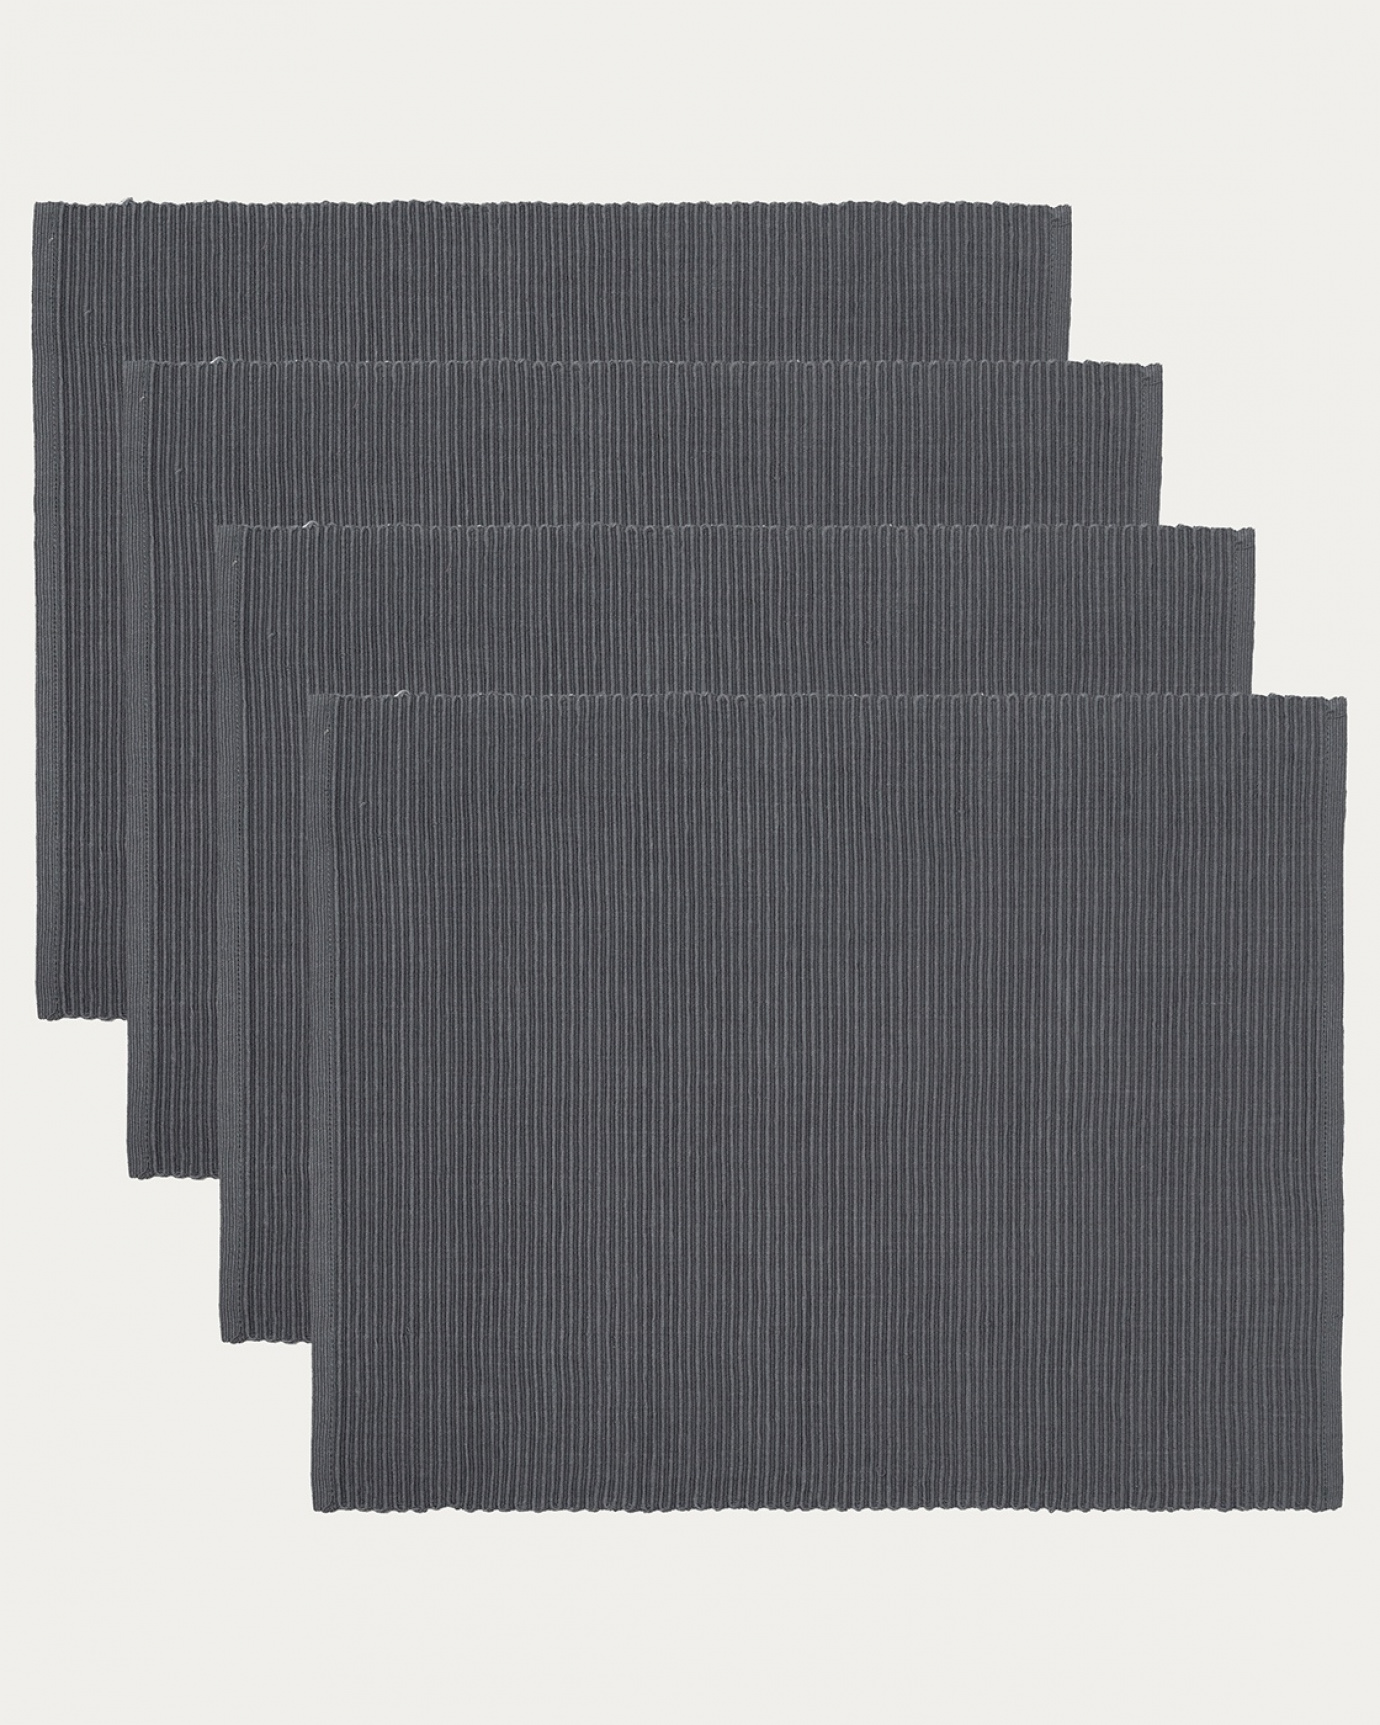 Produktbild granitgrå UNI bordstablett av mjuk bomull i ribbad kvalité från LINUM DESIGN. Storlek 35x46 cm och säljs i 4-pack.